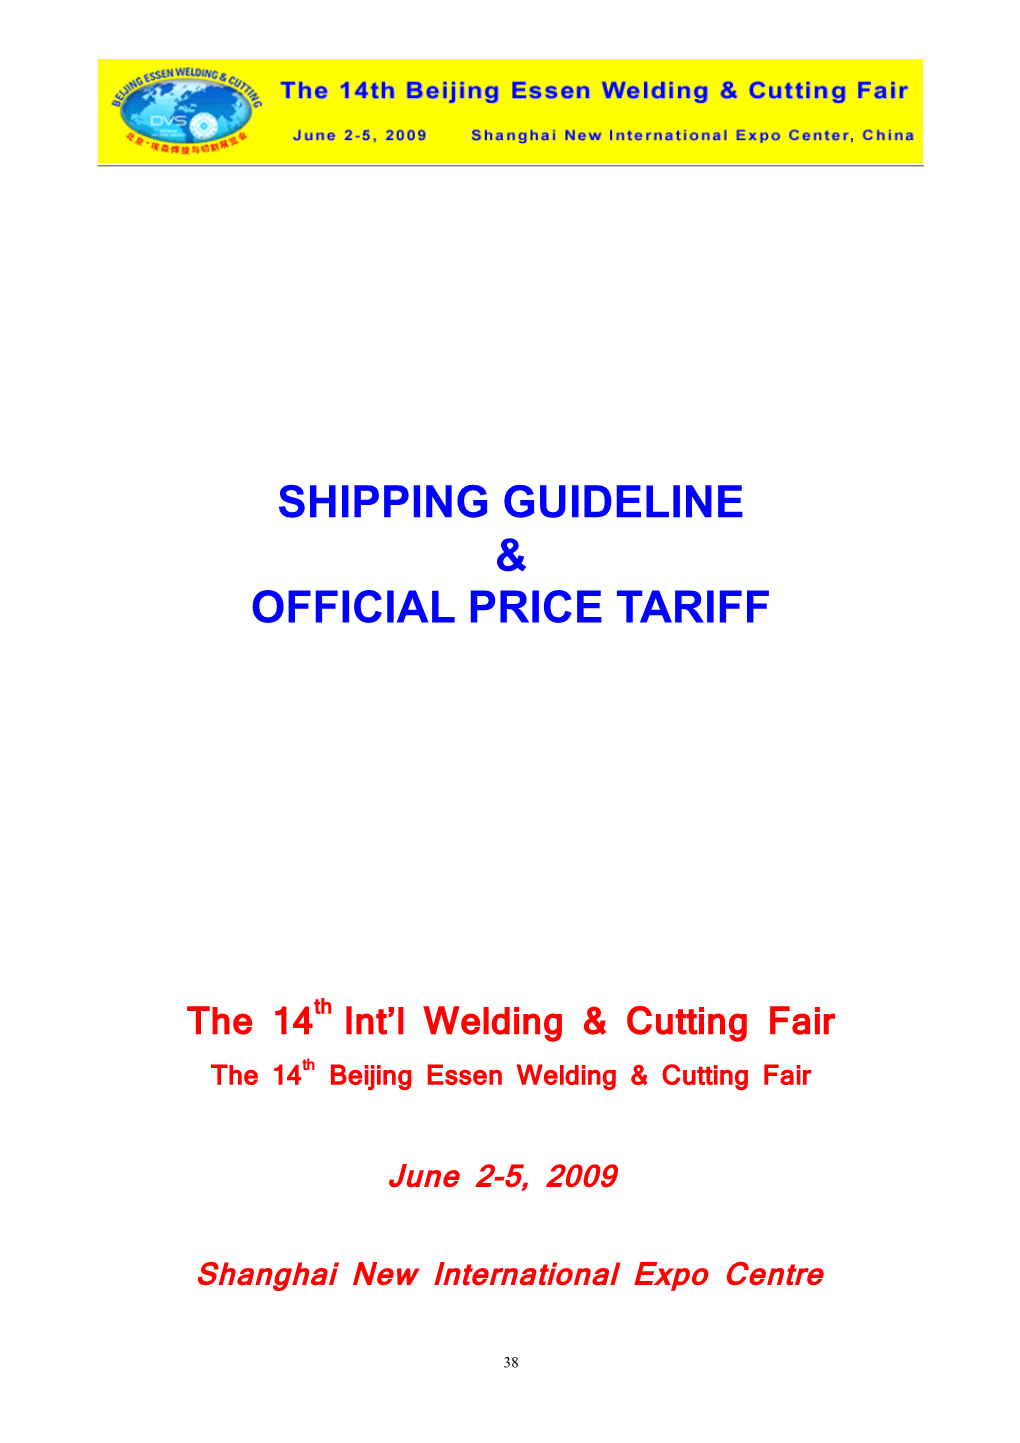 The 14Th Int L Welding & Cutting Fair